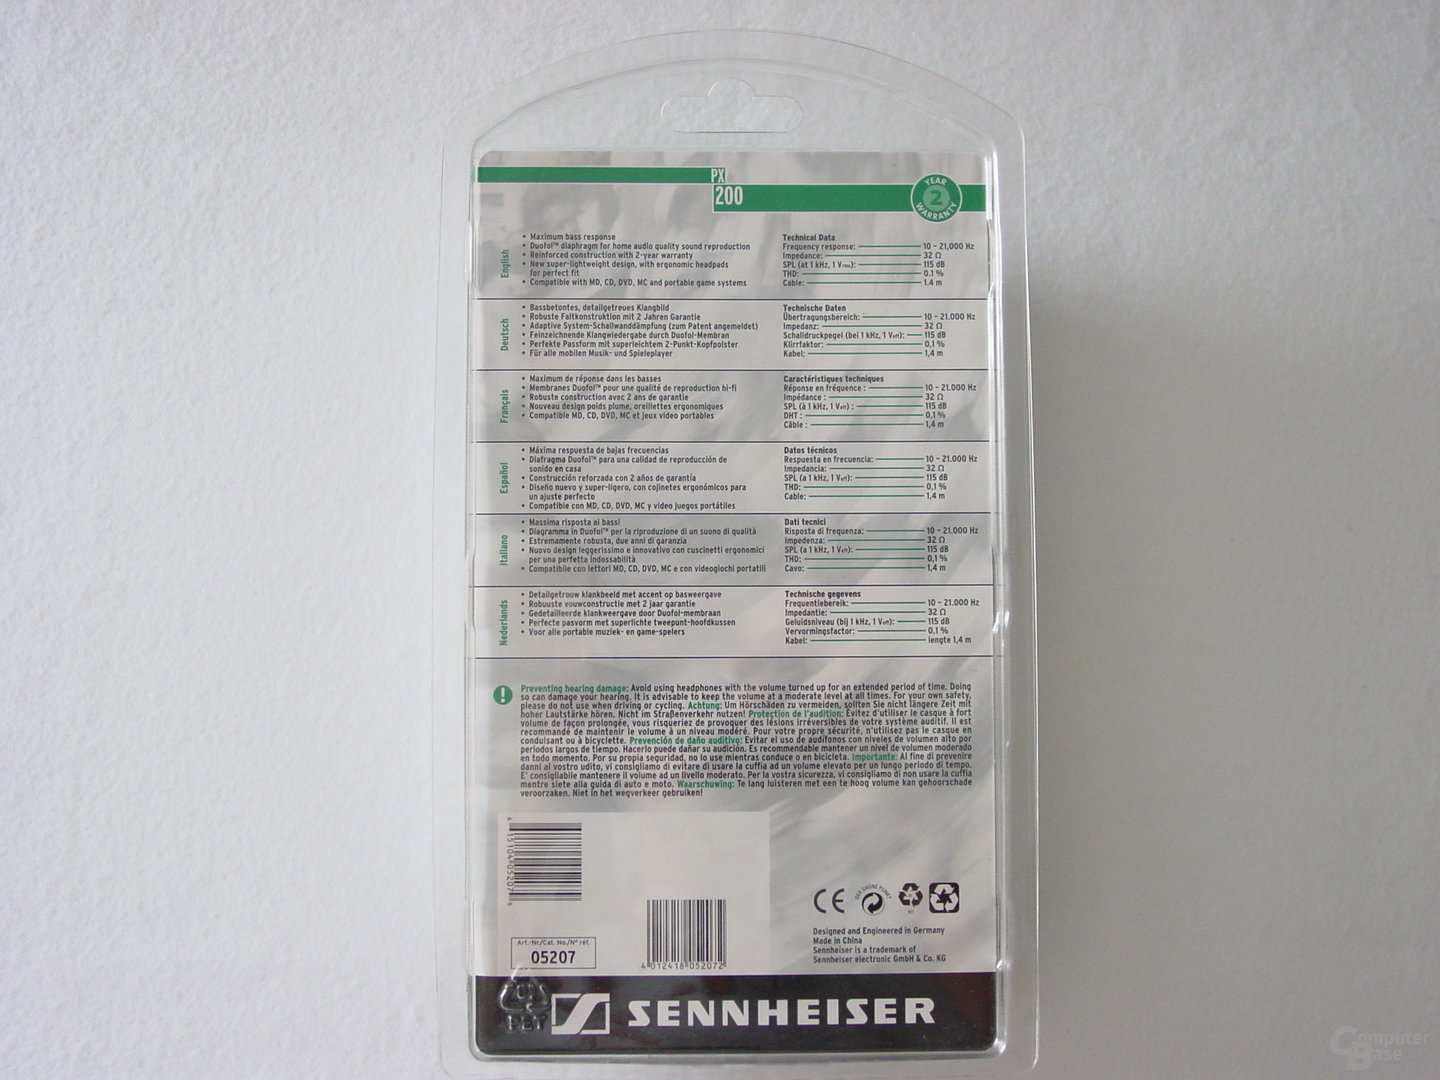 Sennheiser PX200